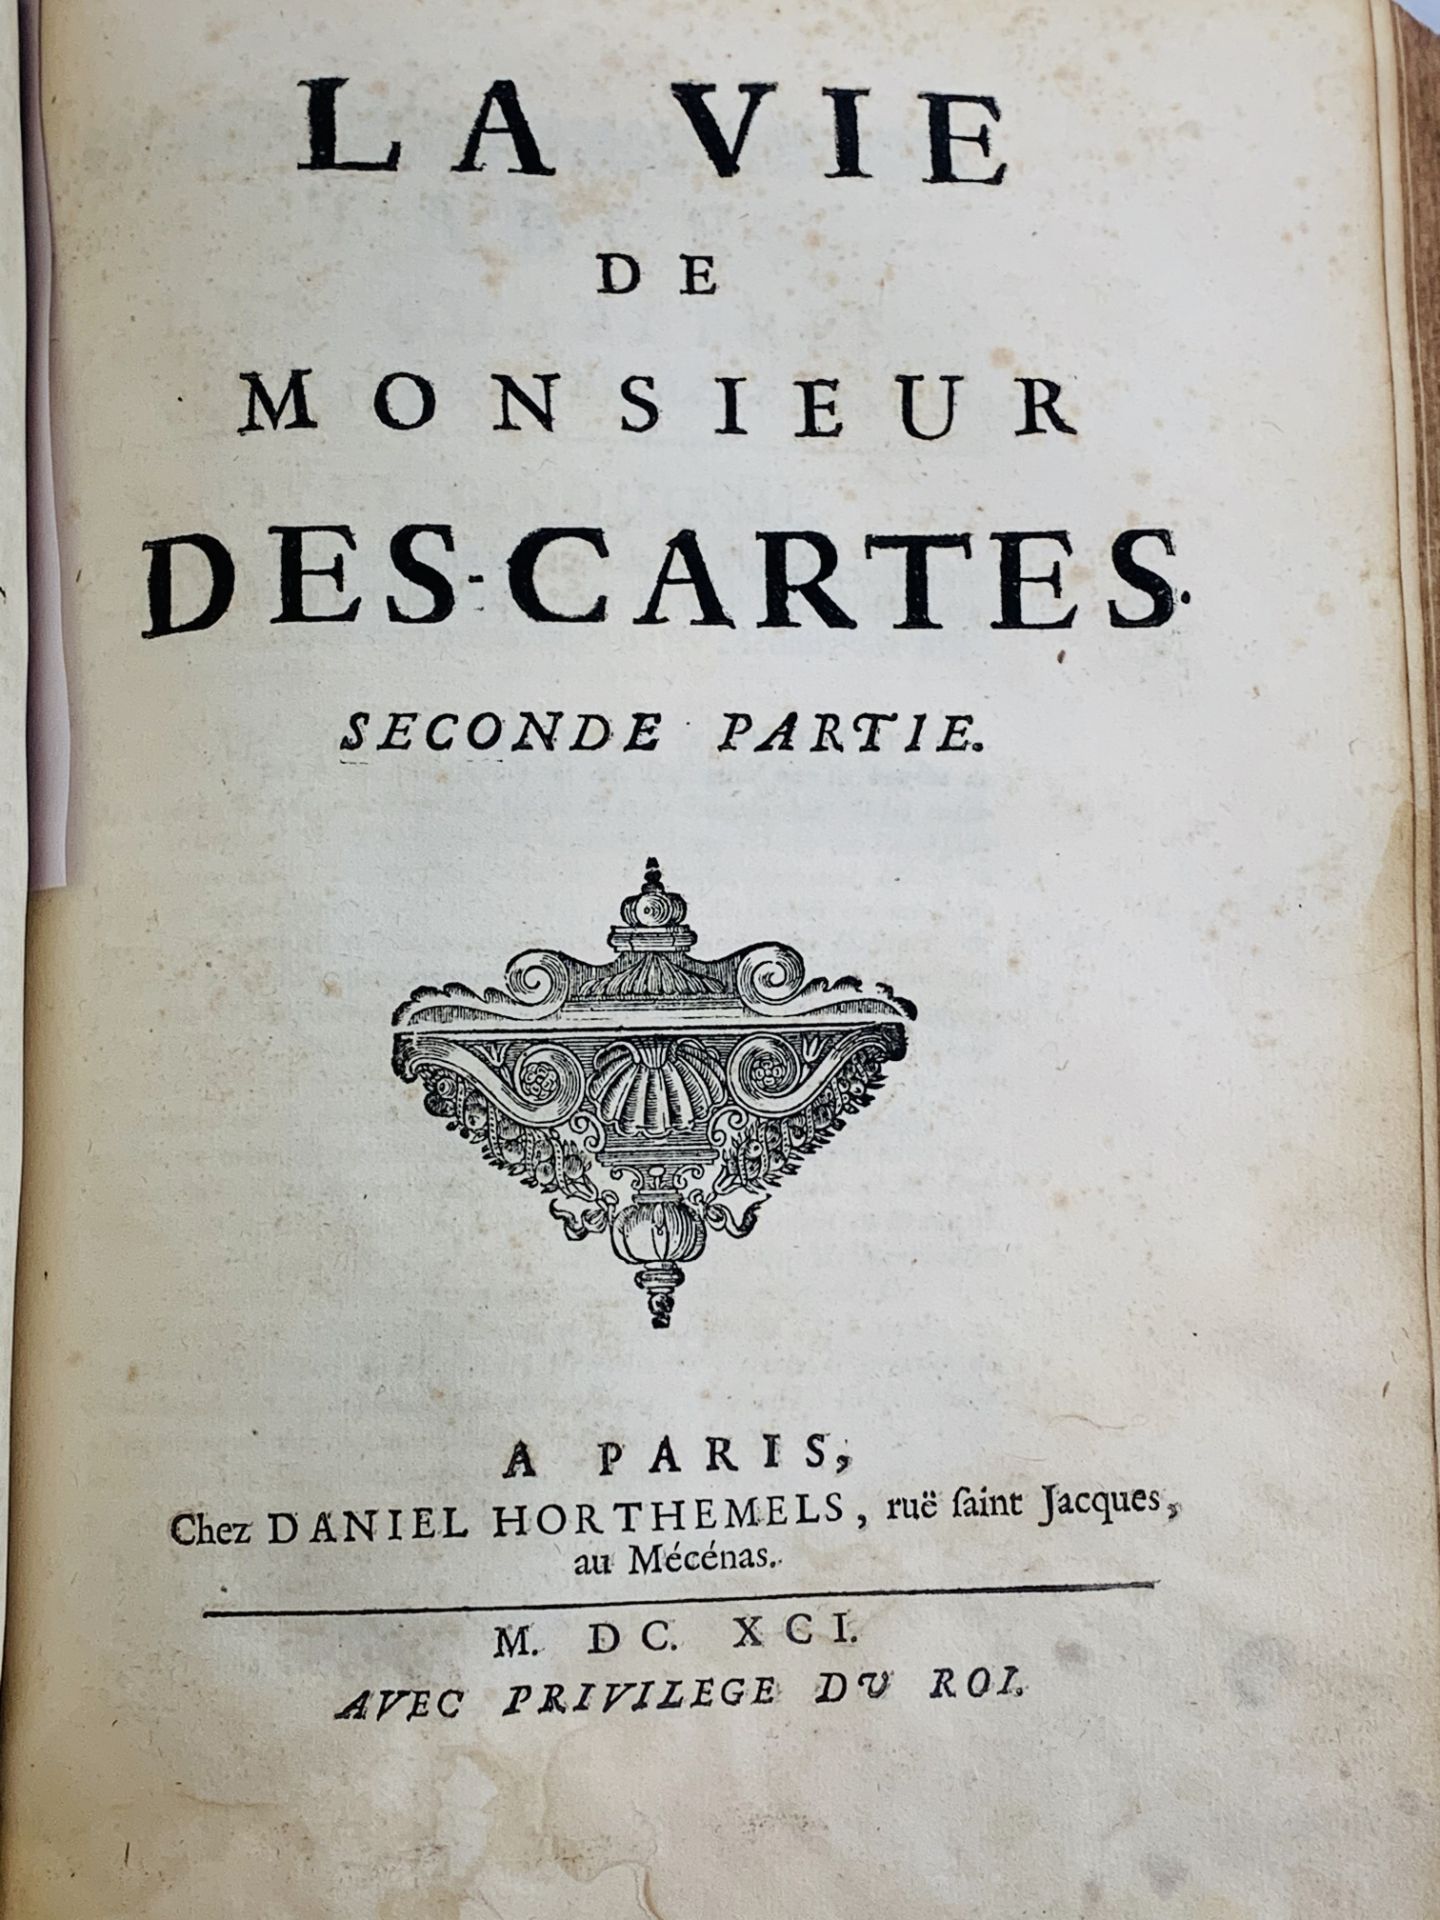 La Vie de Monsieur Rene Descartes, author ? Adrien Baillet, 2 vol bound in 1, published Paris 1691. - Image 3 of 3